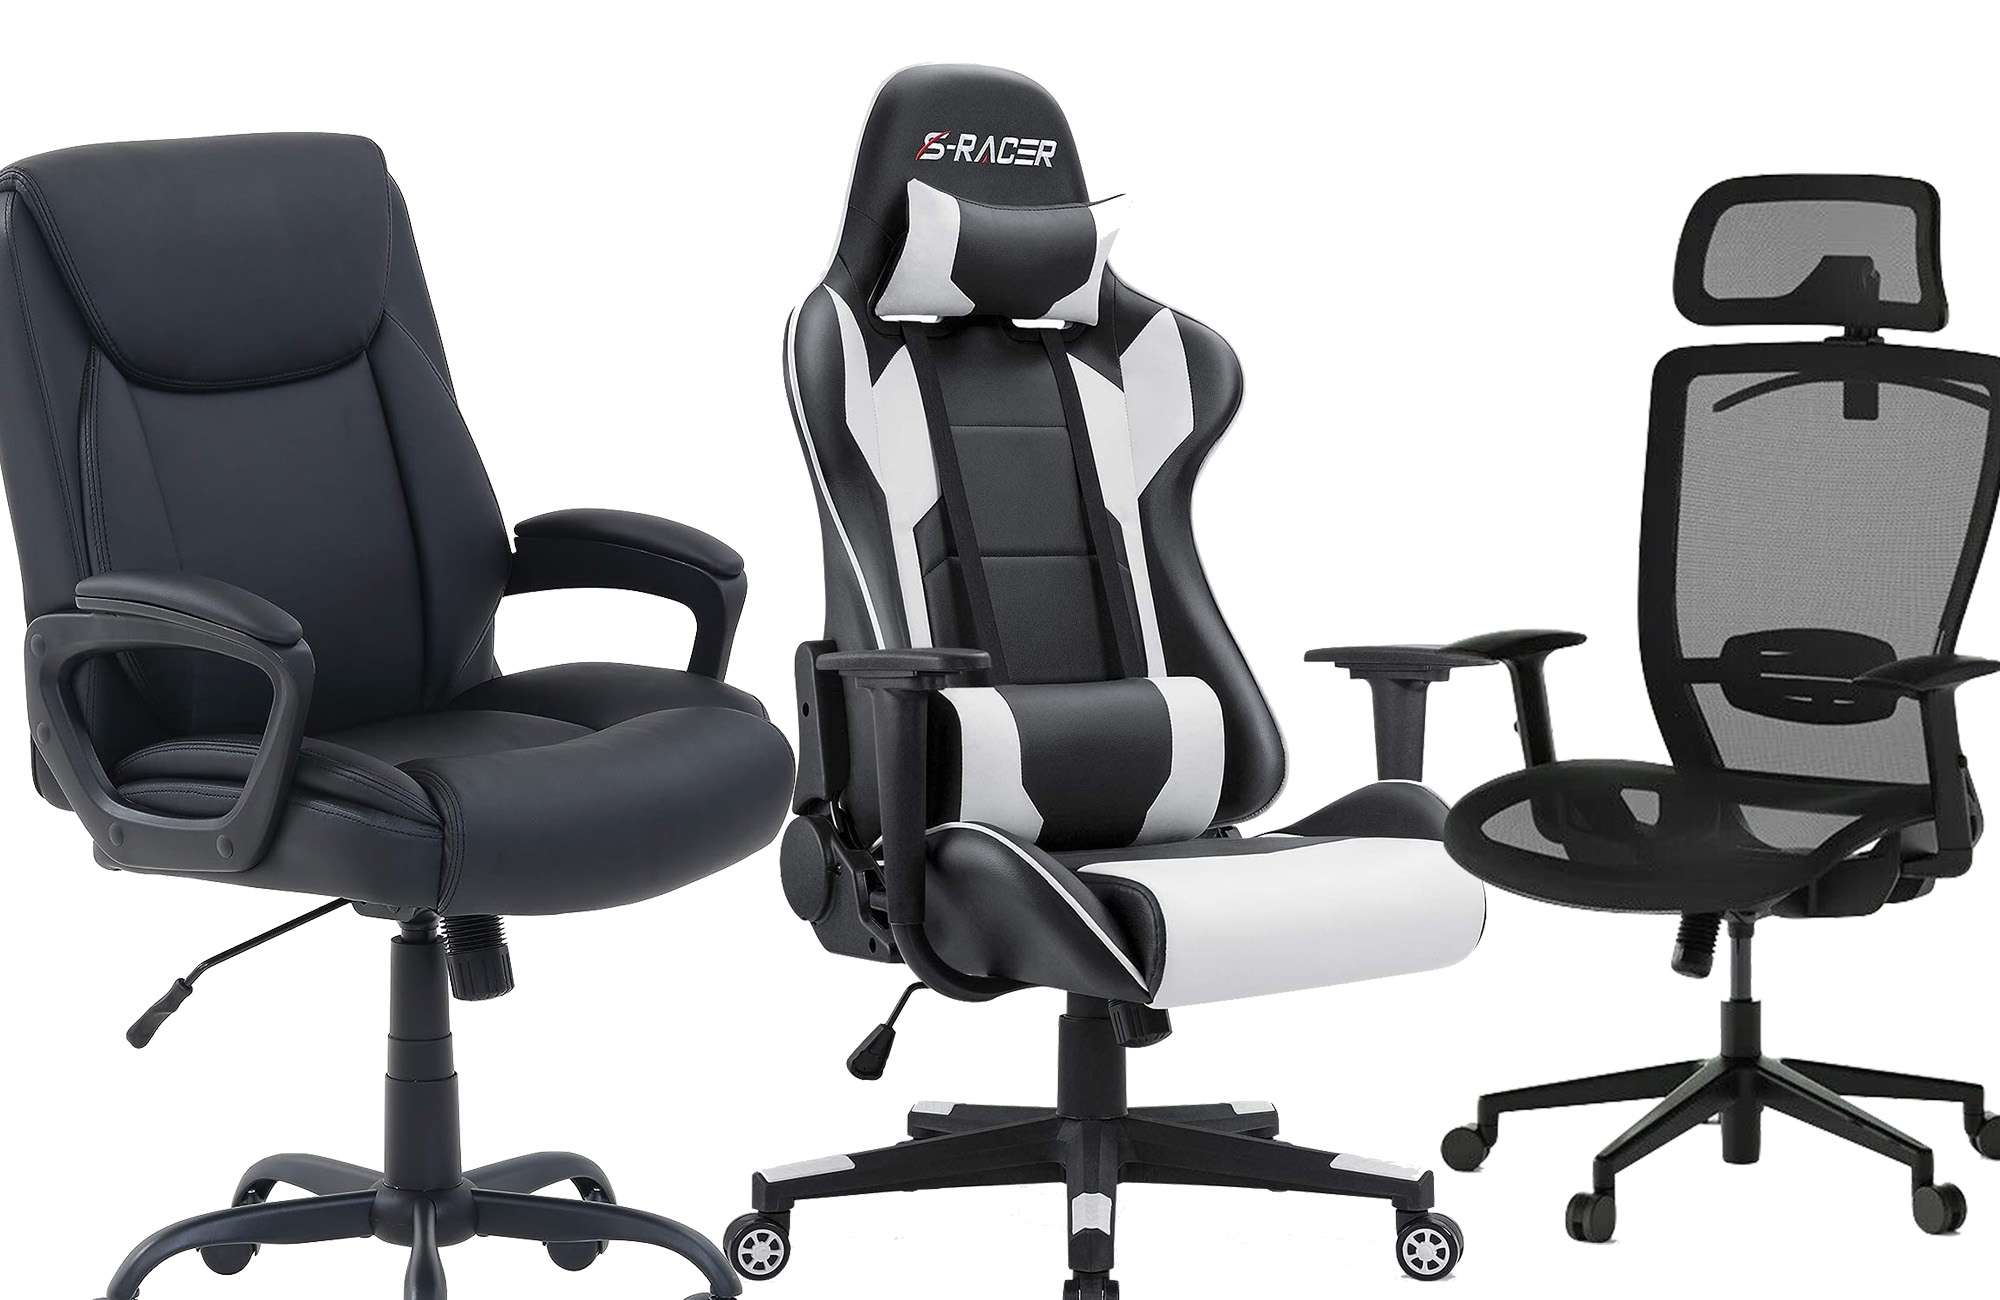 https://www.popsci.com/uploads/2023/09/13/best-cheap-desk-chairs.jpg?auto=webp&width=1440&height=936